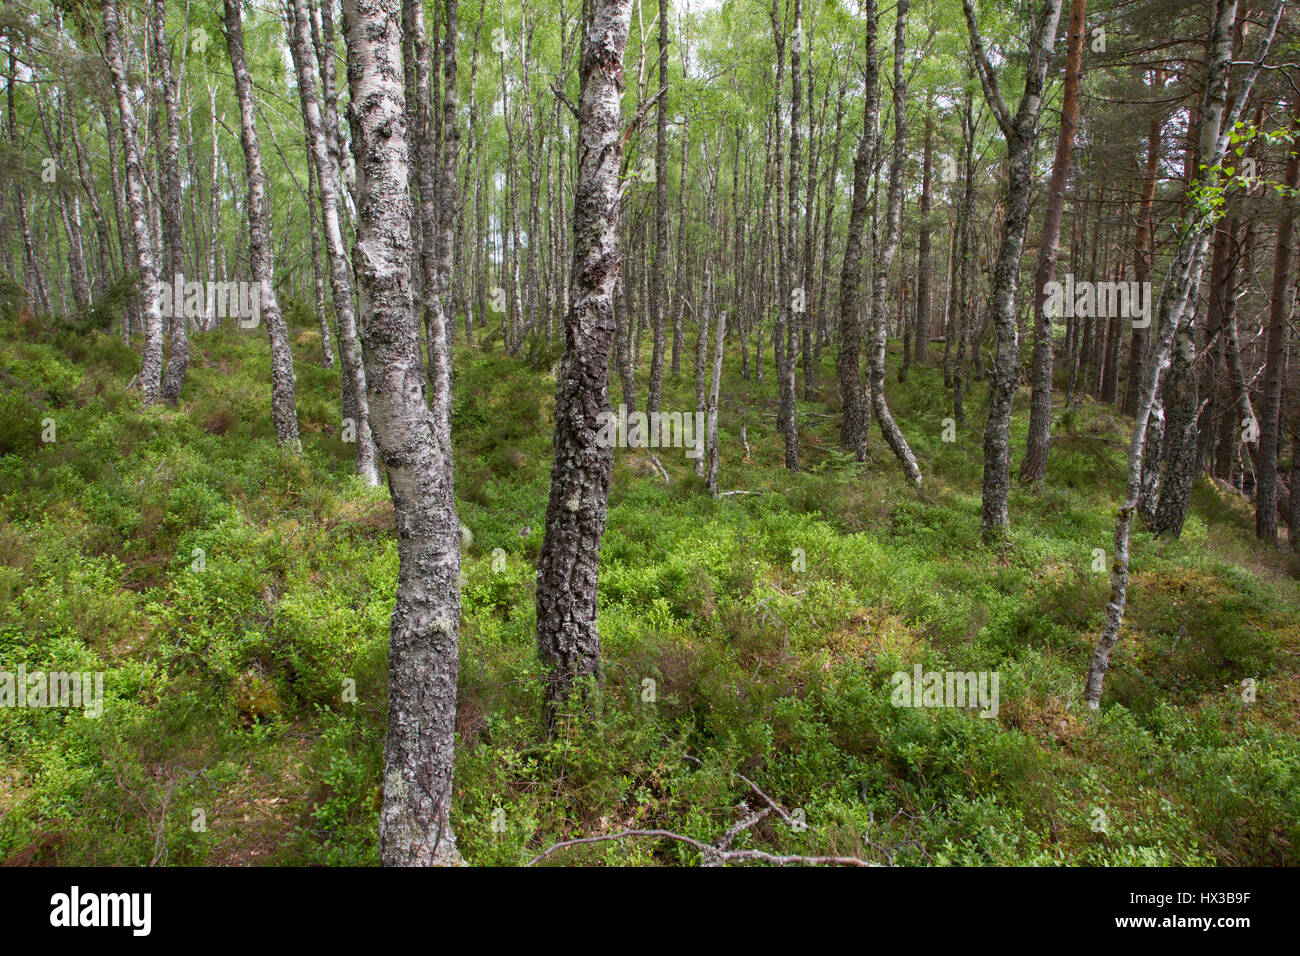 Bouleau blanc, Betula pendula, les arbres qui poussent dans les bois, de Rothiemurchus, les Highlands, Ecosse, Royaume-Uni. Banque D'Images